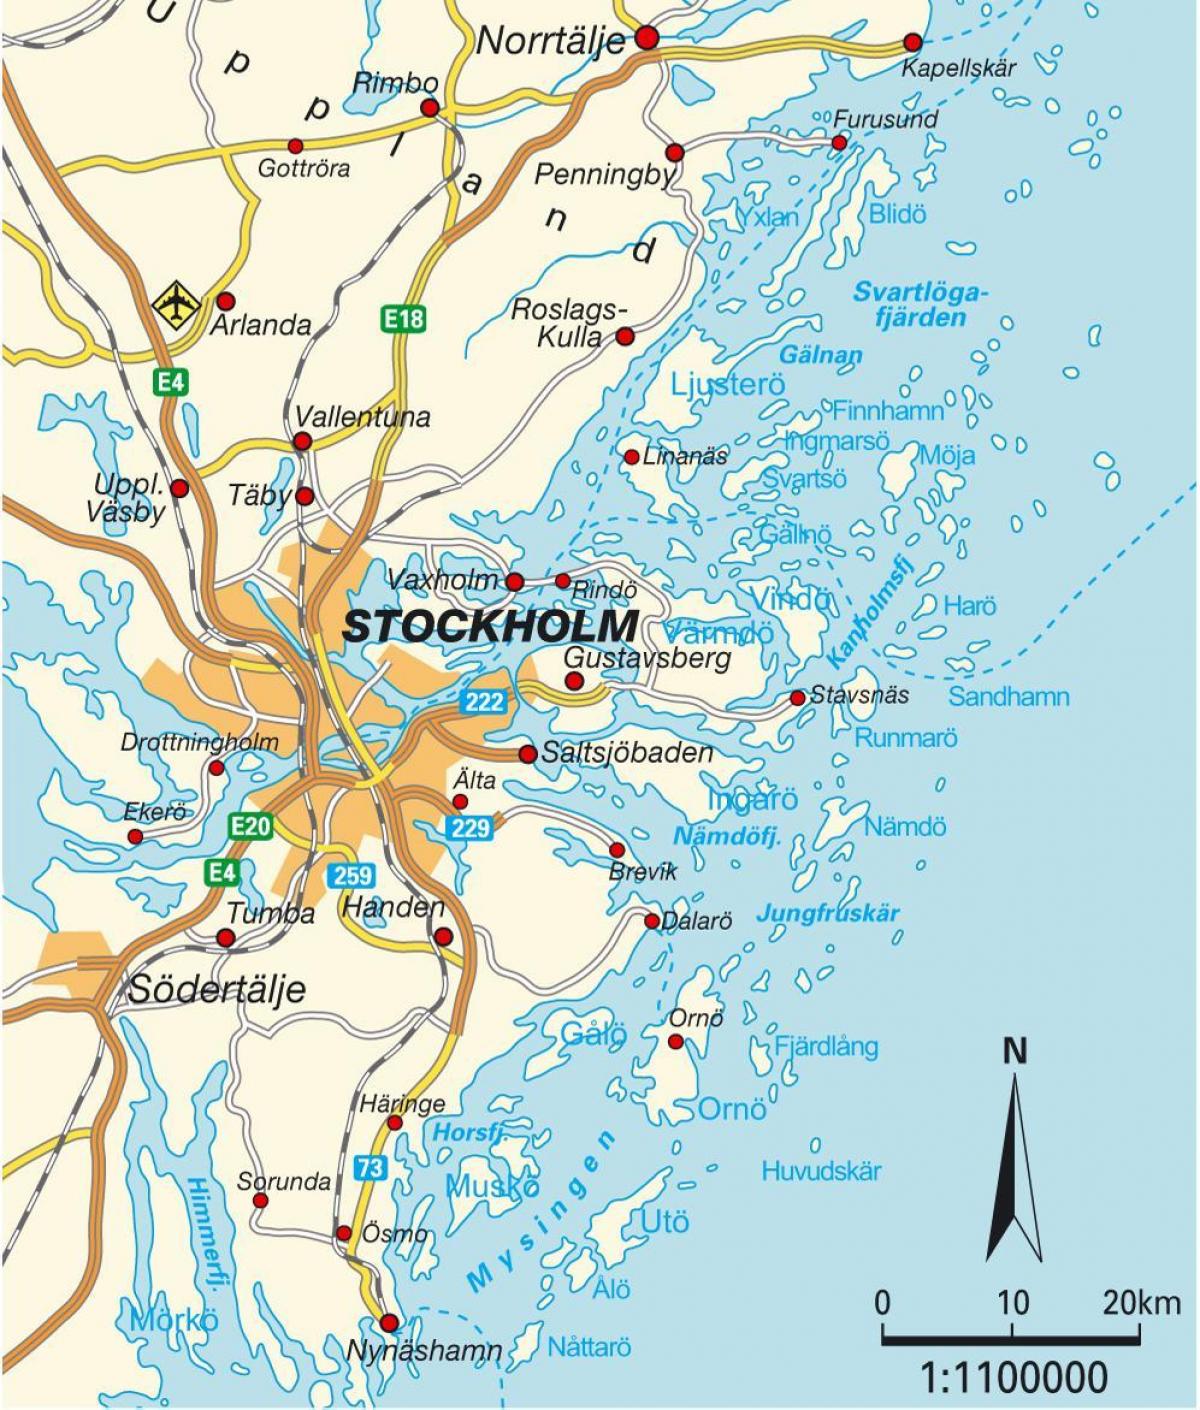 Стокхолм, Шведска мапа на градот